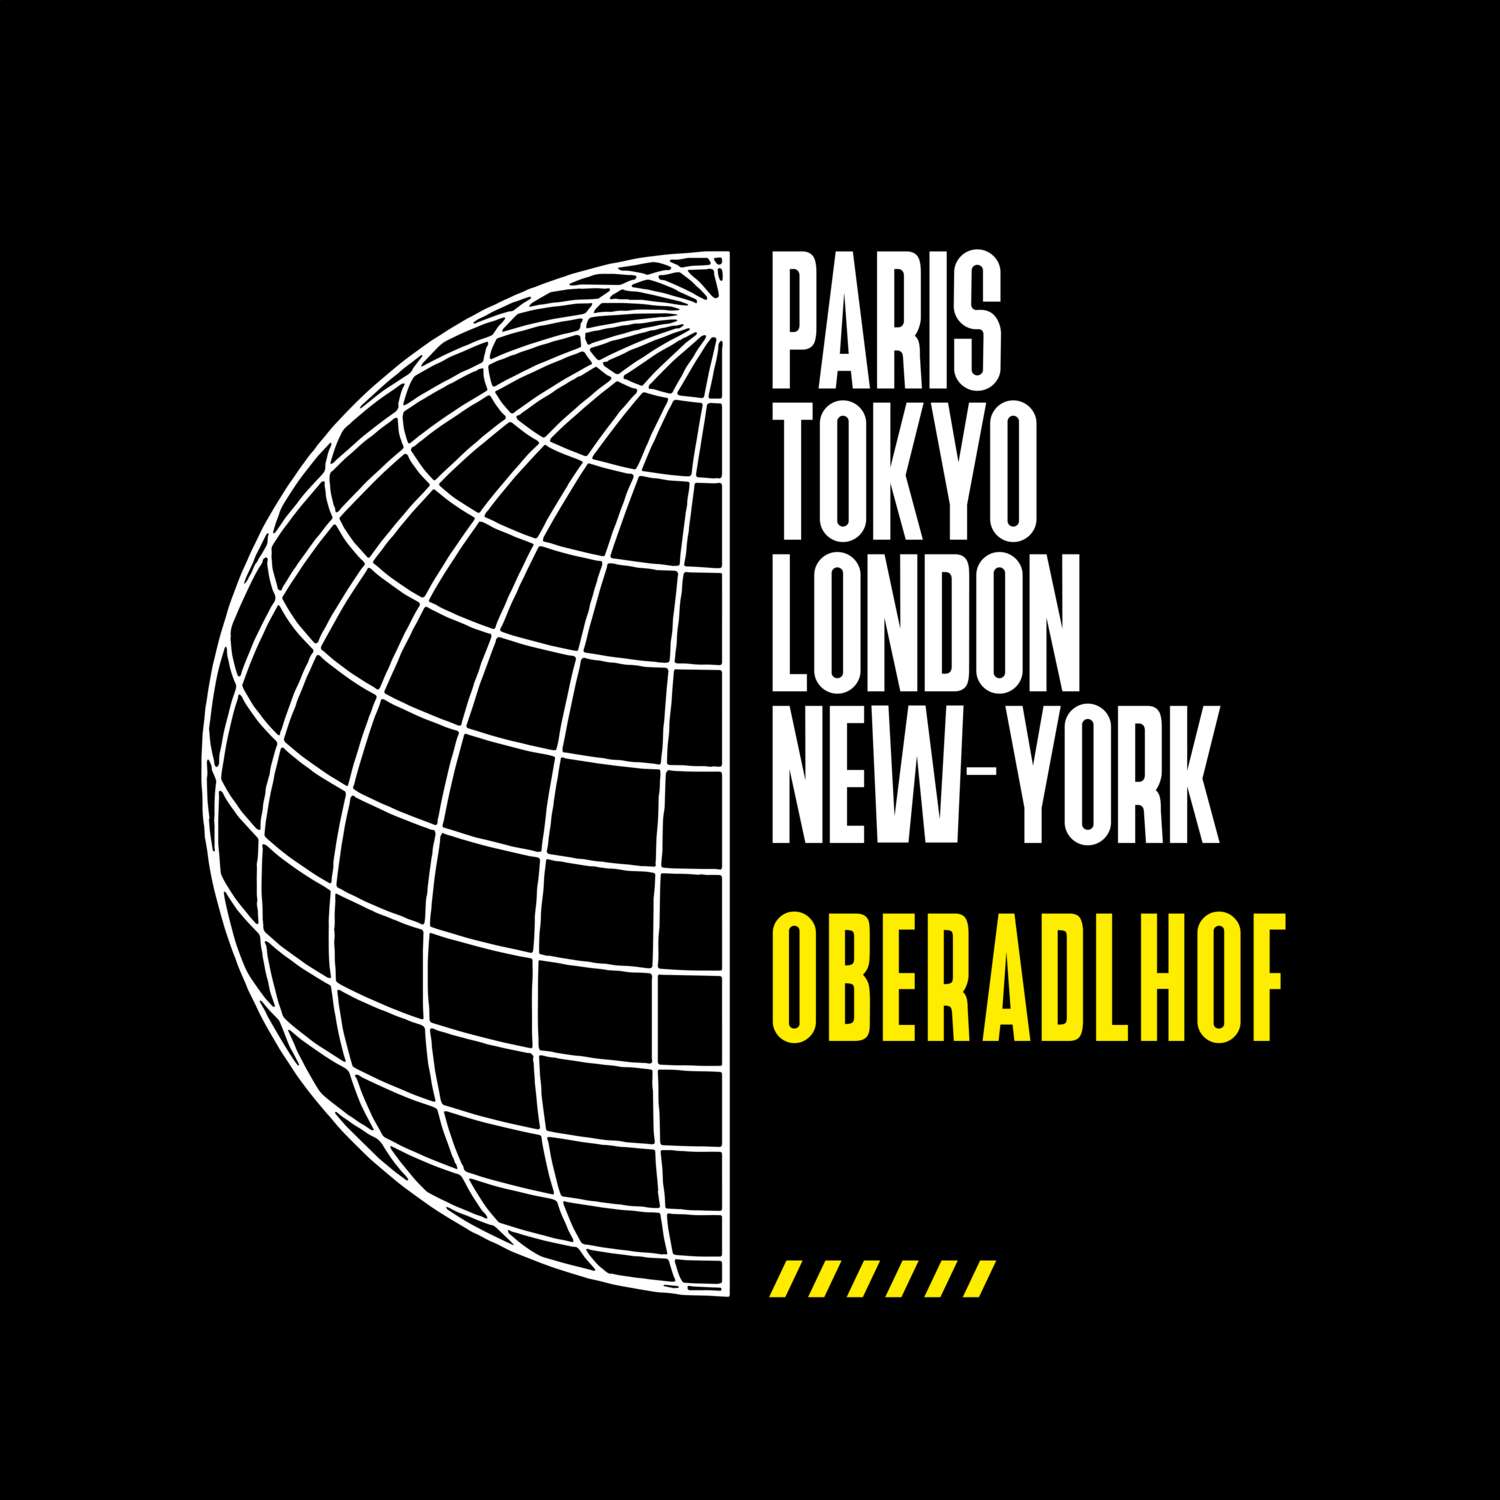 Oberadlhof T-Shirt »Paris Tokyo London«